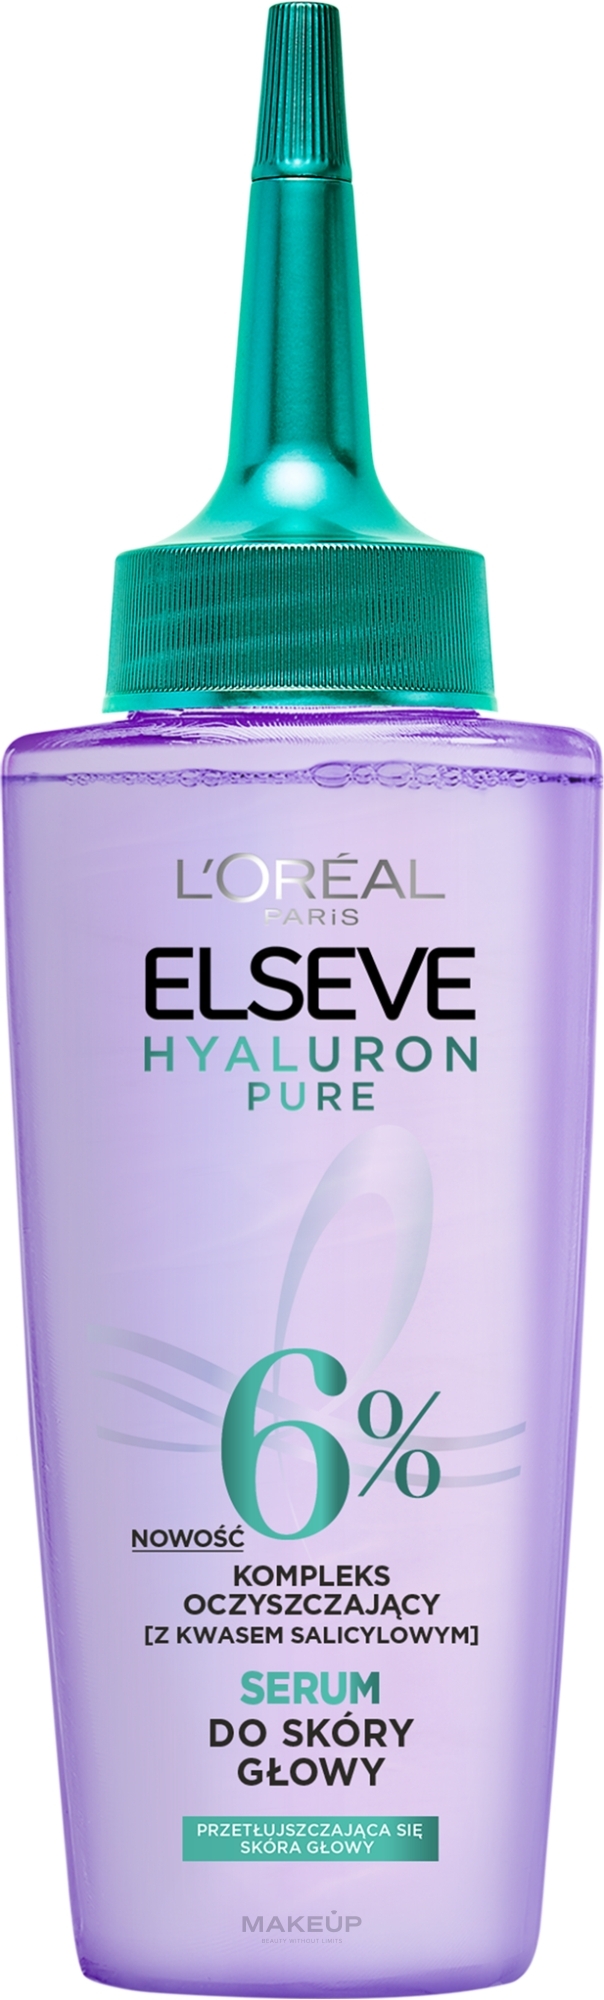 Serum do skóry głowy - L'Oreal Paris Elseve Hyaluron Pure Oil Erasing — Zdjęcie 102 ml